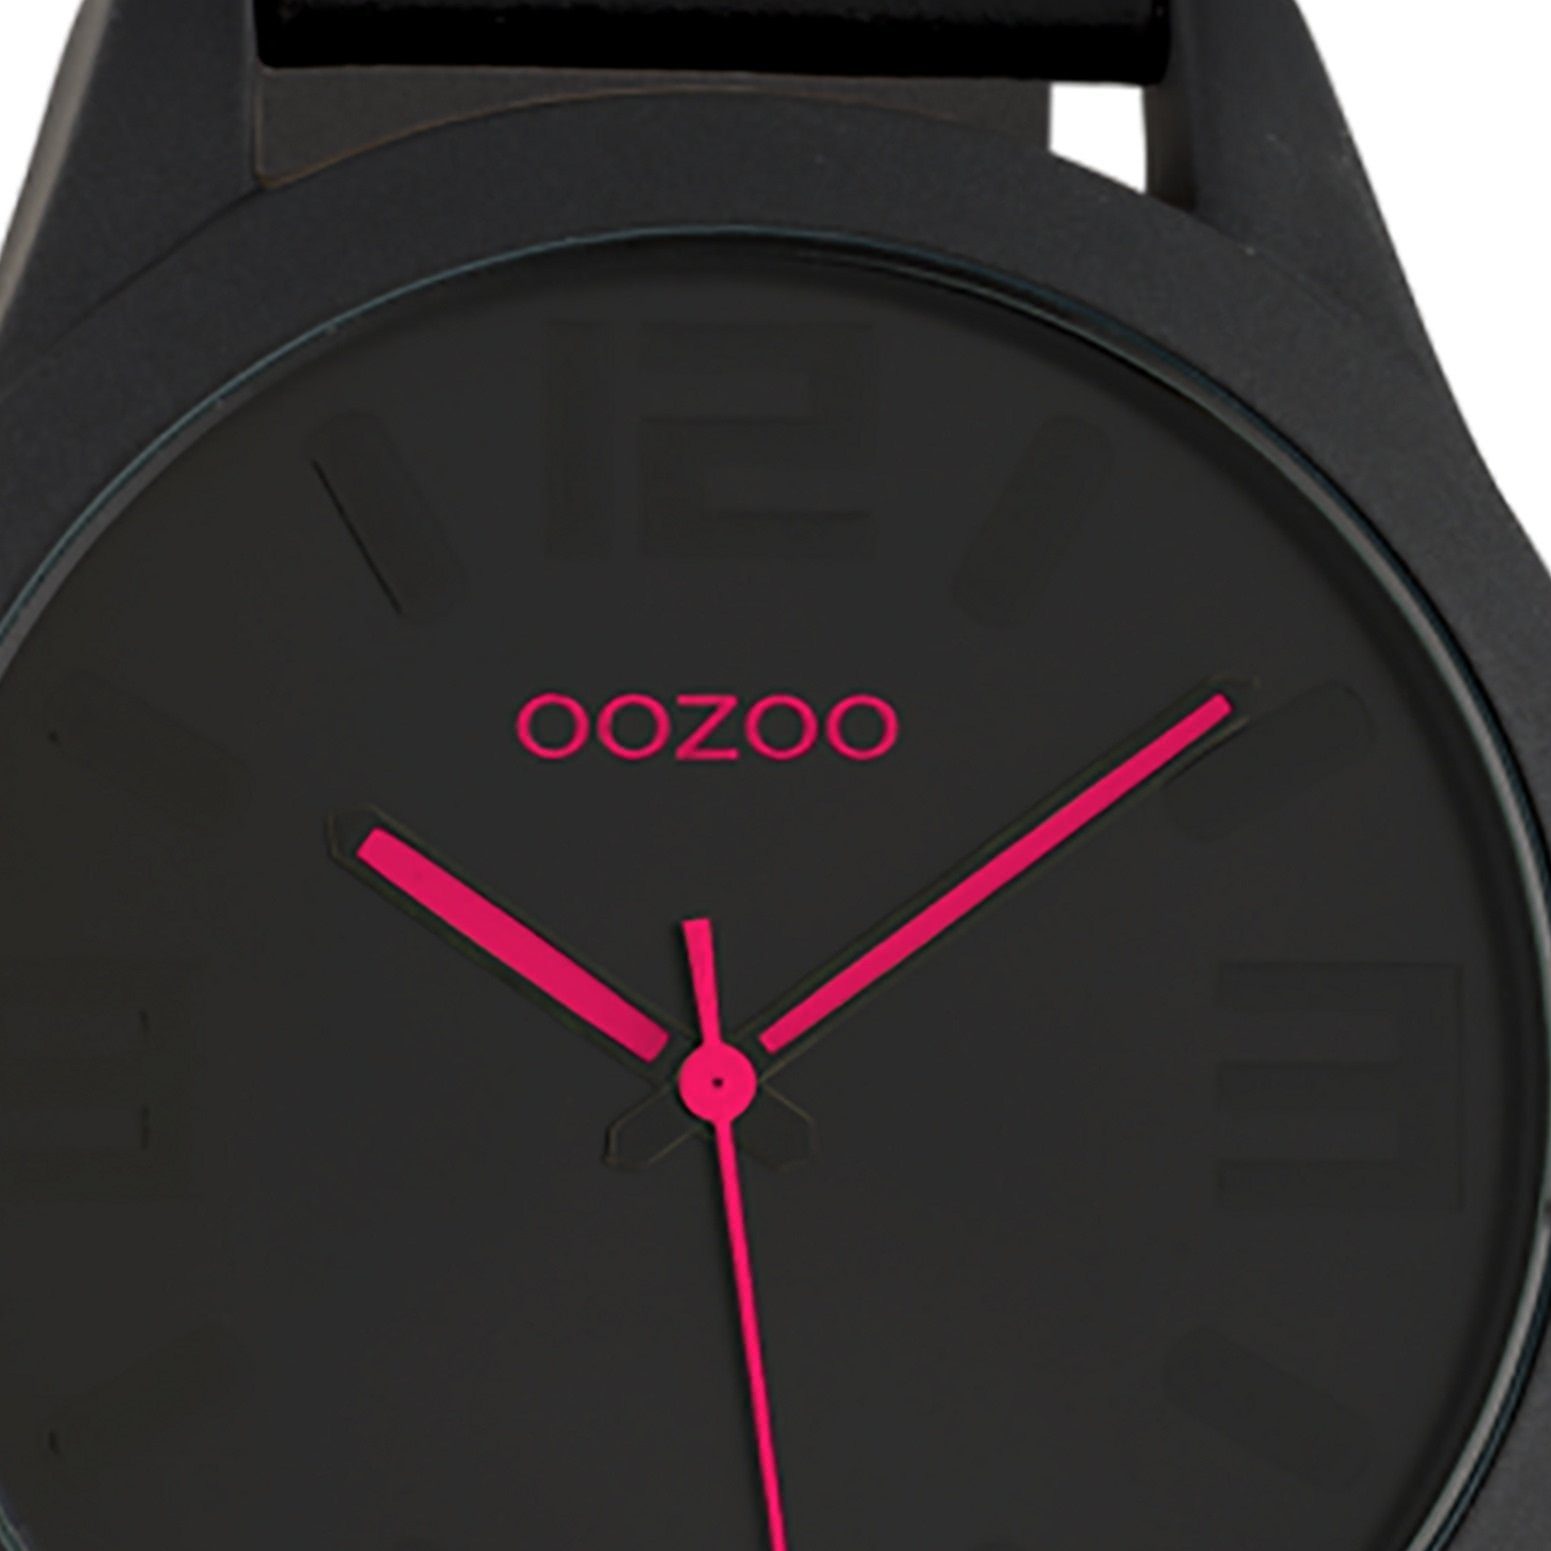 Armbanduhr schwarz, groß rund, Quarzuhr 45mm) Oozoo Damen Damenuhr Lederarmband, Fashion-Style (ca. OOZOO